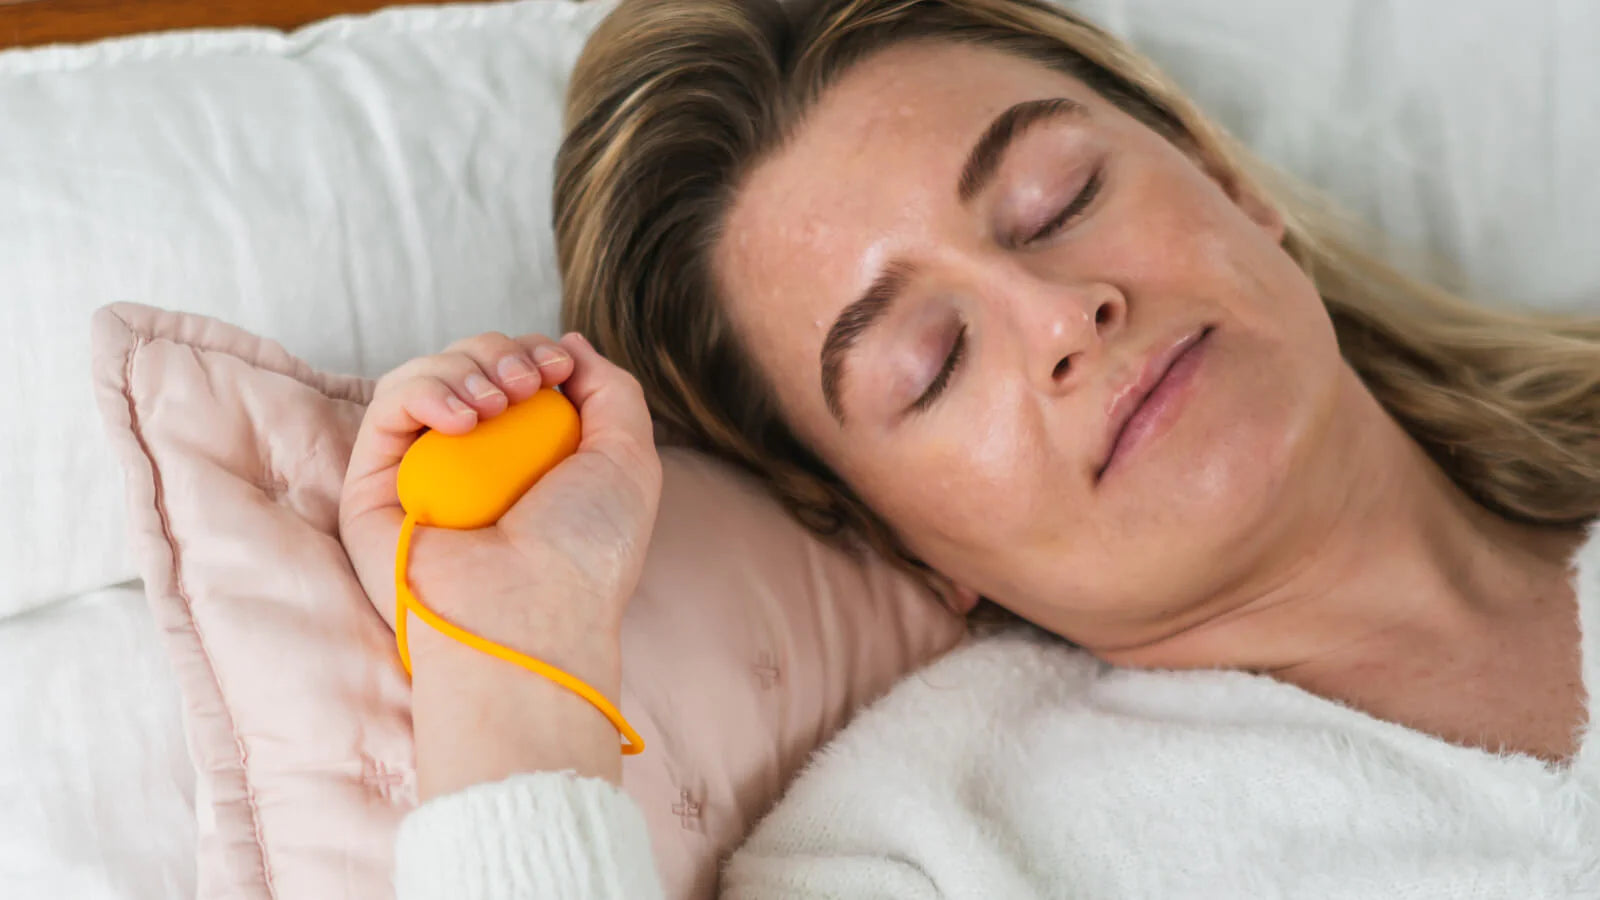 Ce dispositif révolutionnaire peut soulager l'insomnie en quelques minutes de façon naturelle.